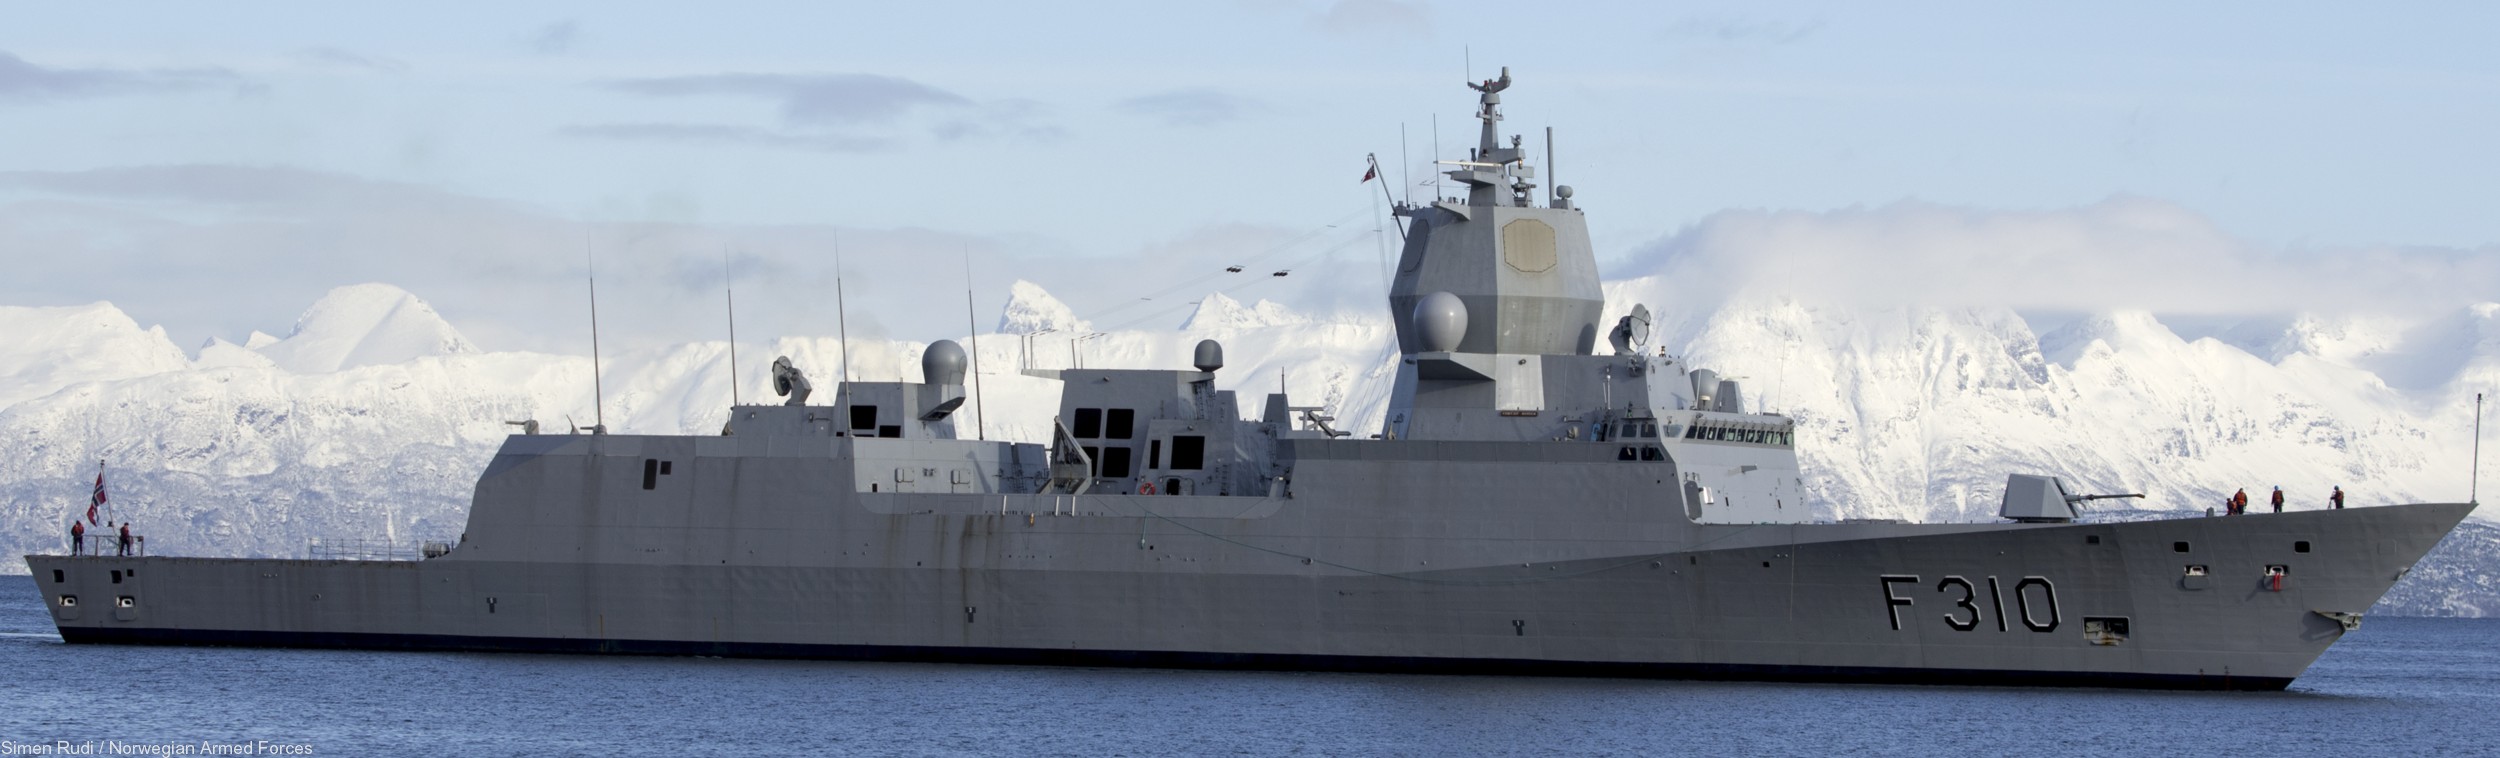 f-310 fridtjof nansen hnoms knm frigate royal norwegian navy sjoforsvaret 26